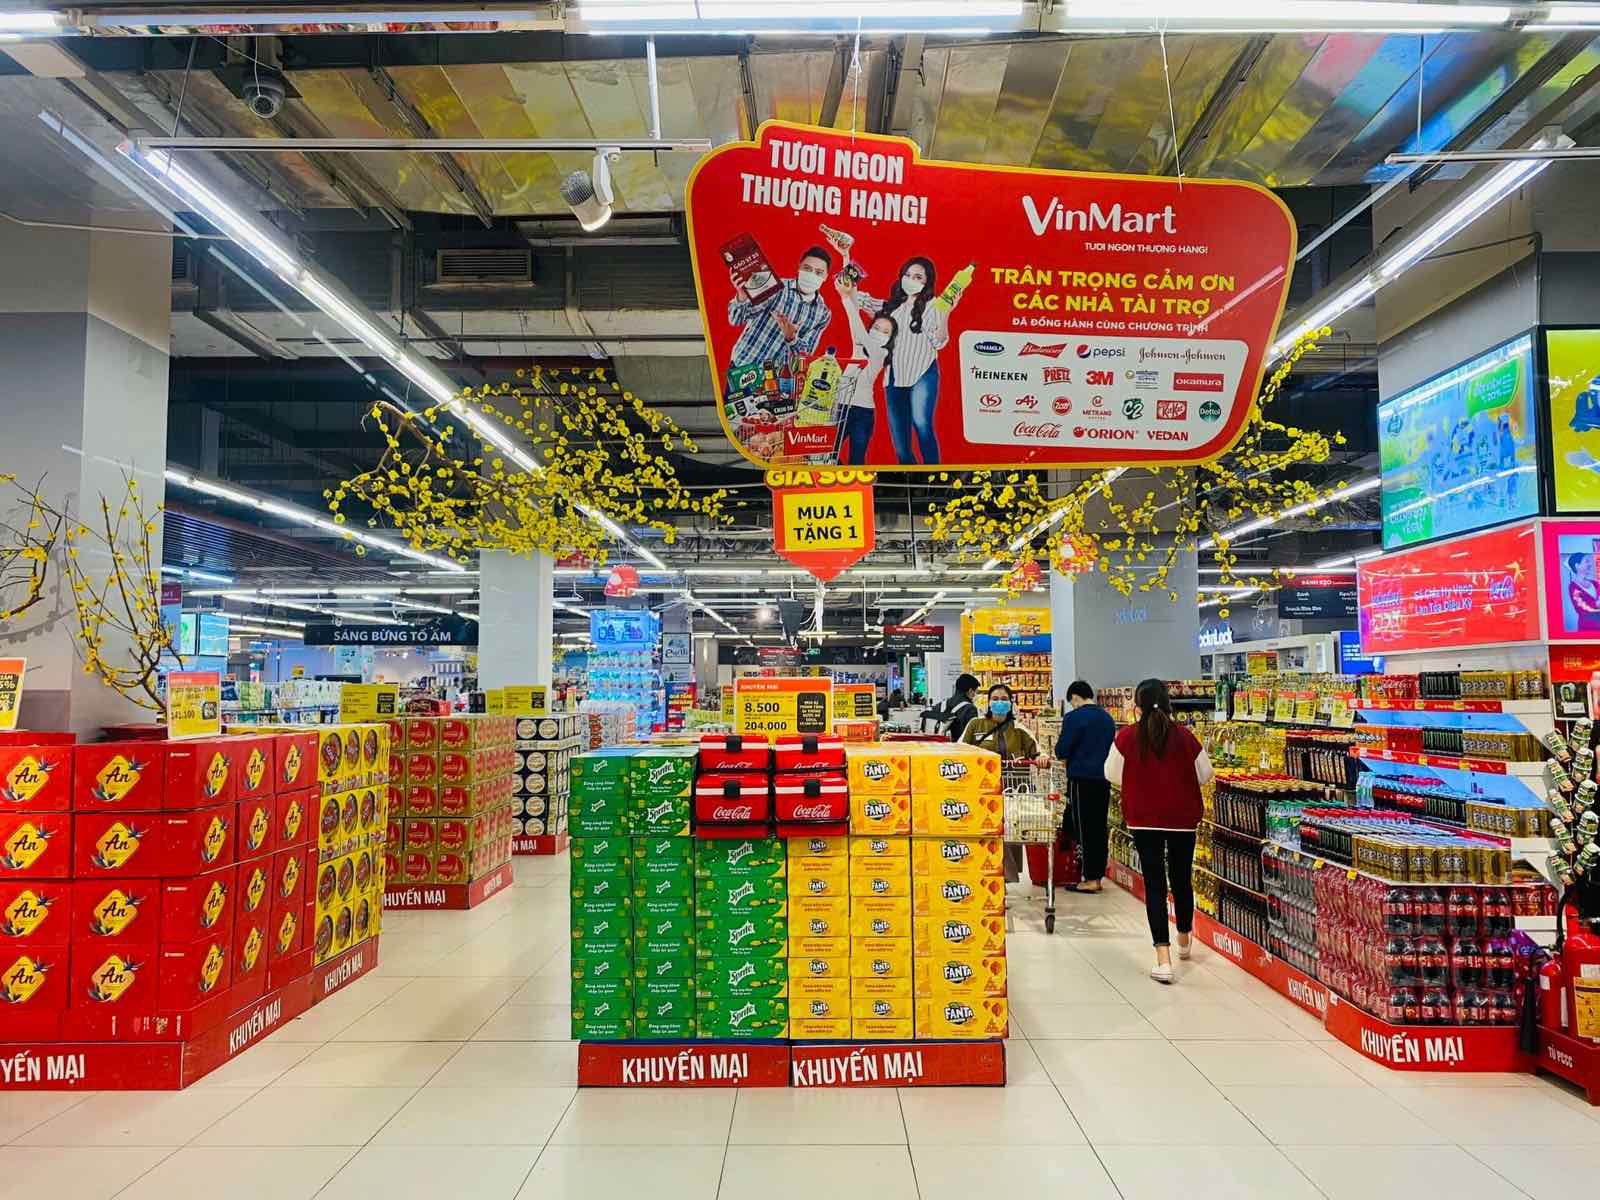 WinMart triển khai Hội chợ đặc sản vùng miền Việt Nam, tung giỏ quà Tết chỉ từ 299.000 đồng